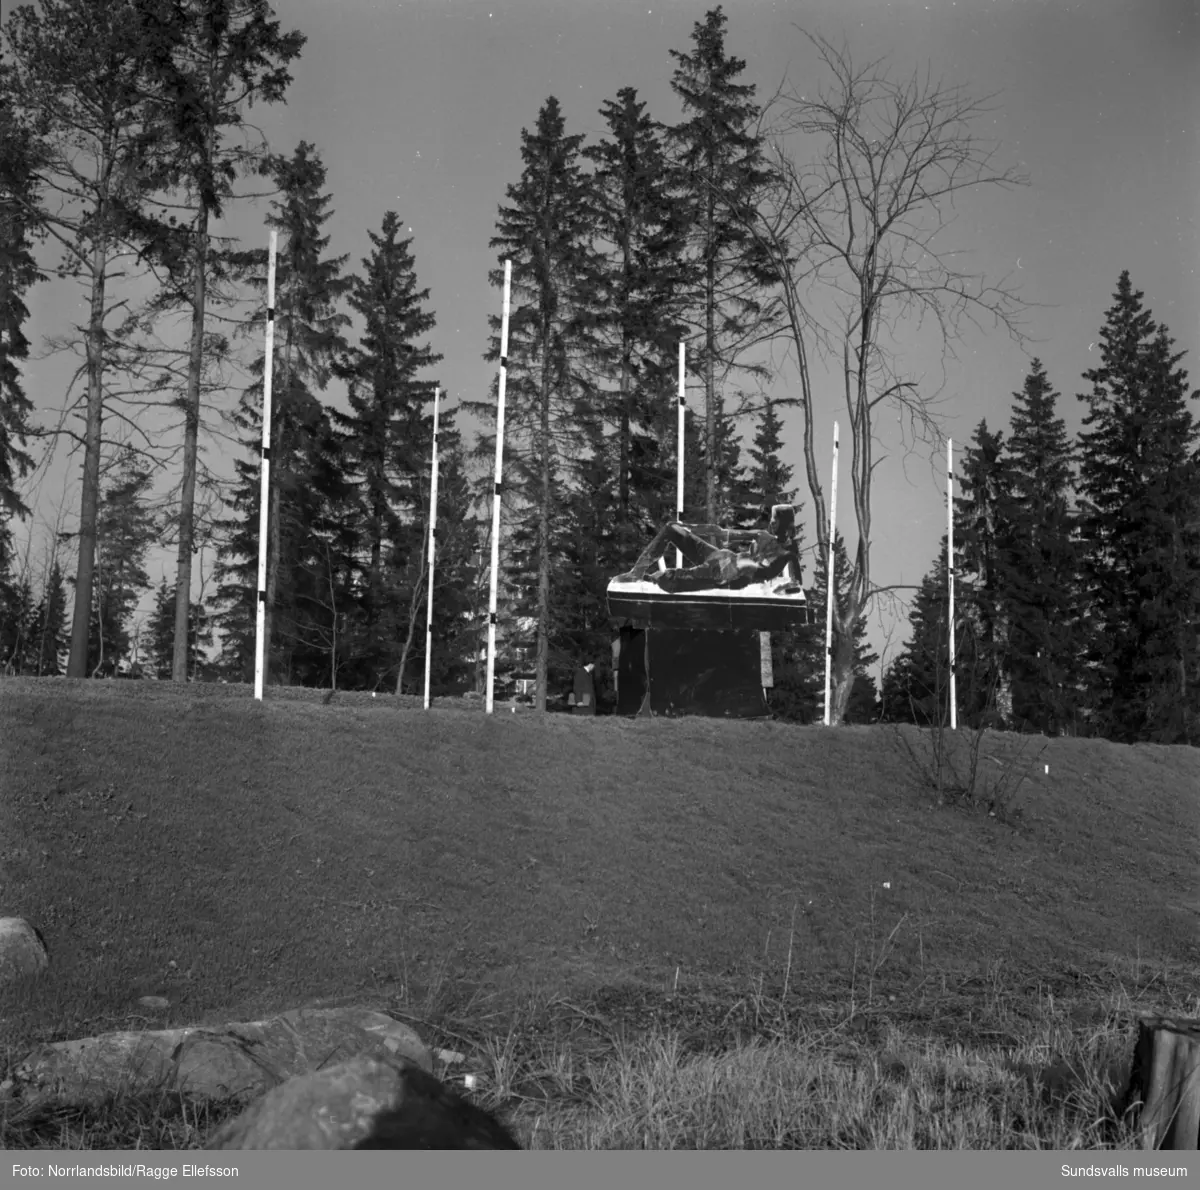 Bostadsområdet Norrliden är färdigbyggt och nu planeras offentlig utsmyckning i parken mellan husen. Byggmästare Anders Nisses donerade bronsskulpturen Mor och barn av konstnären Curt Thorsjö som kom på plats 1963.